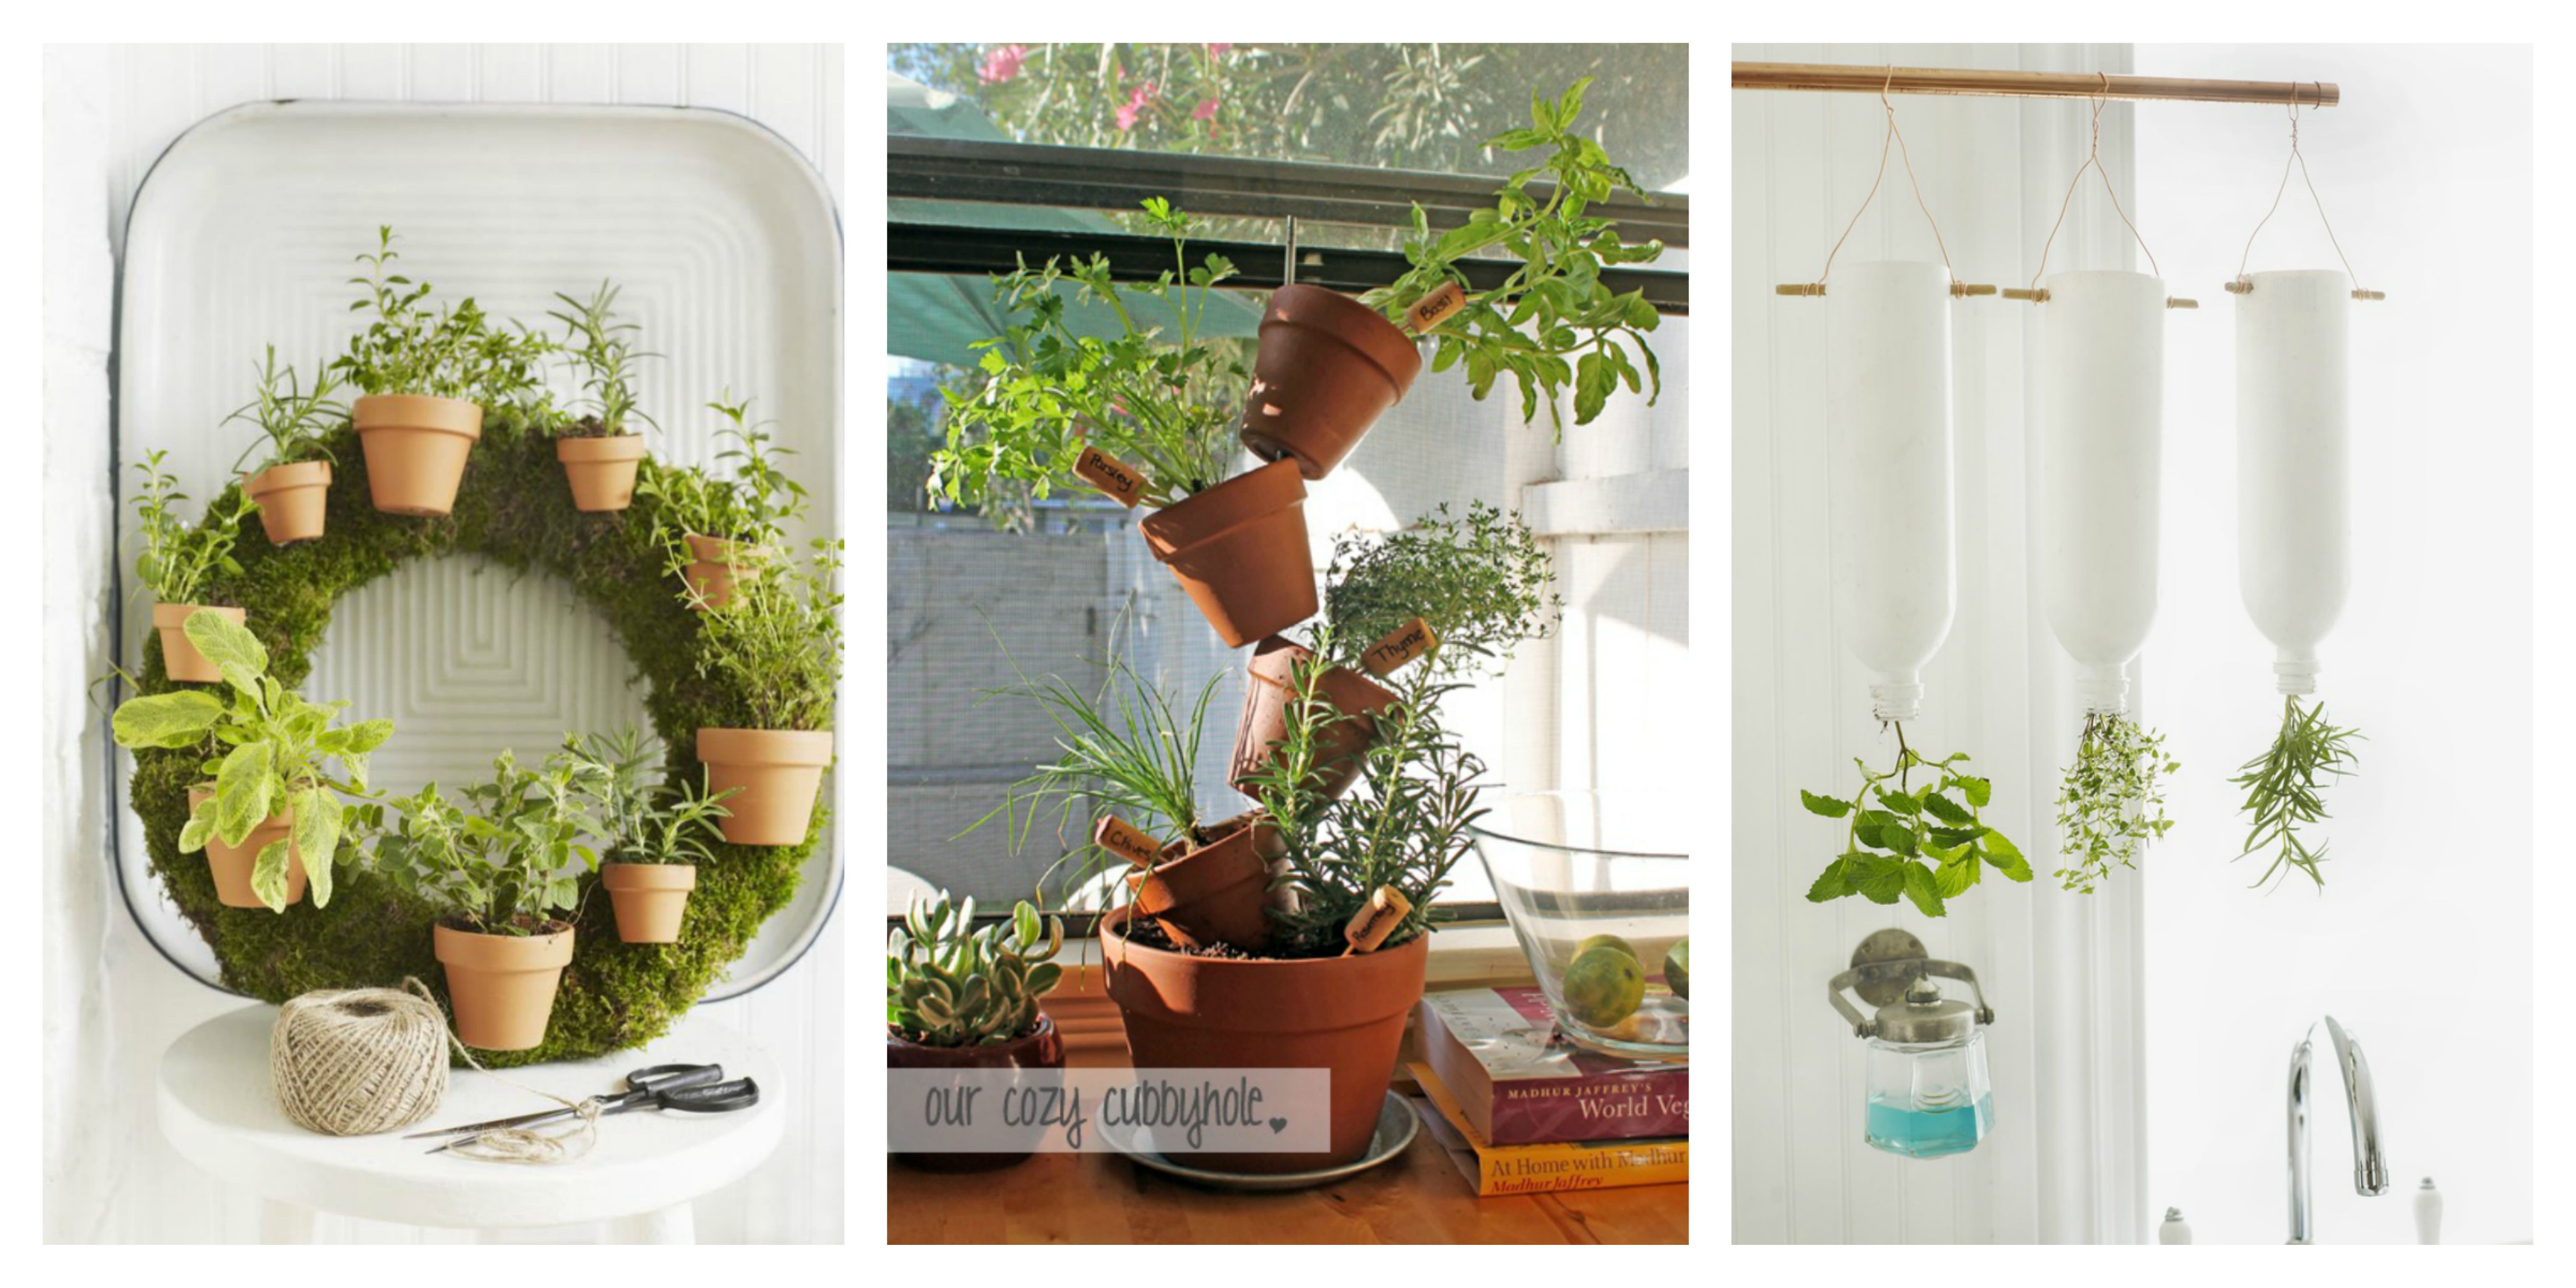 Best ideas about DIY Indoor Gardening
. Save or Pin 30 Amazing DIY Indoor Herbs Garden Ideas Now.